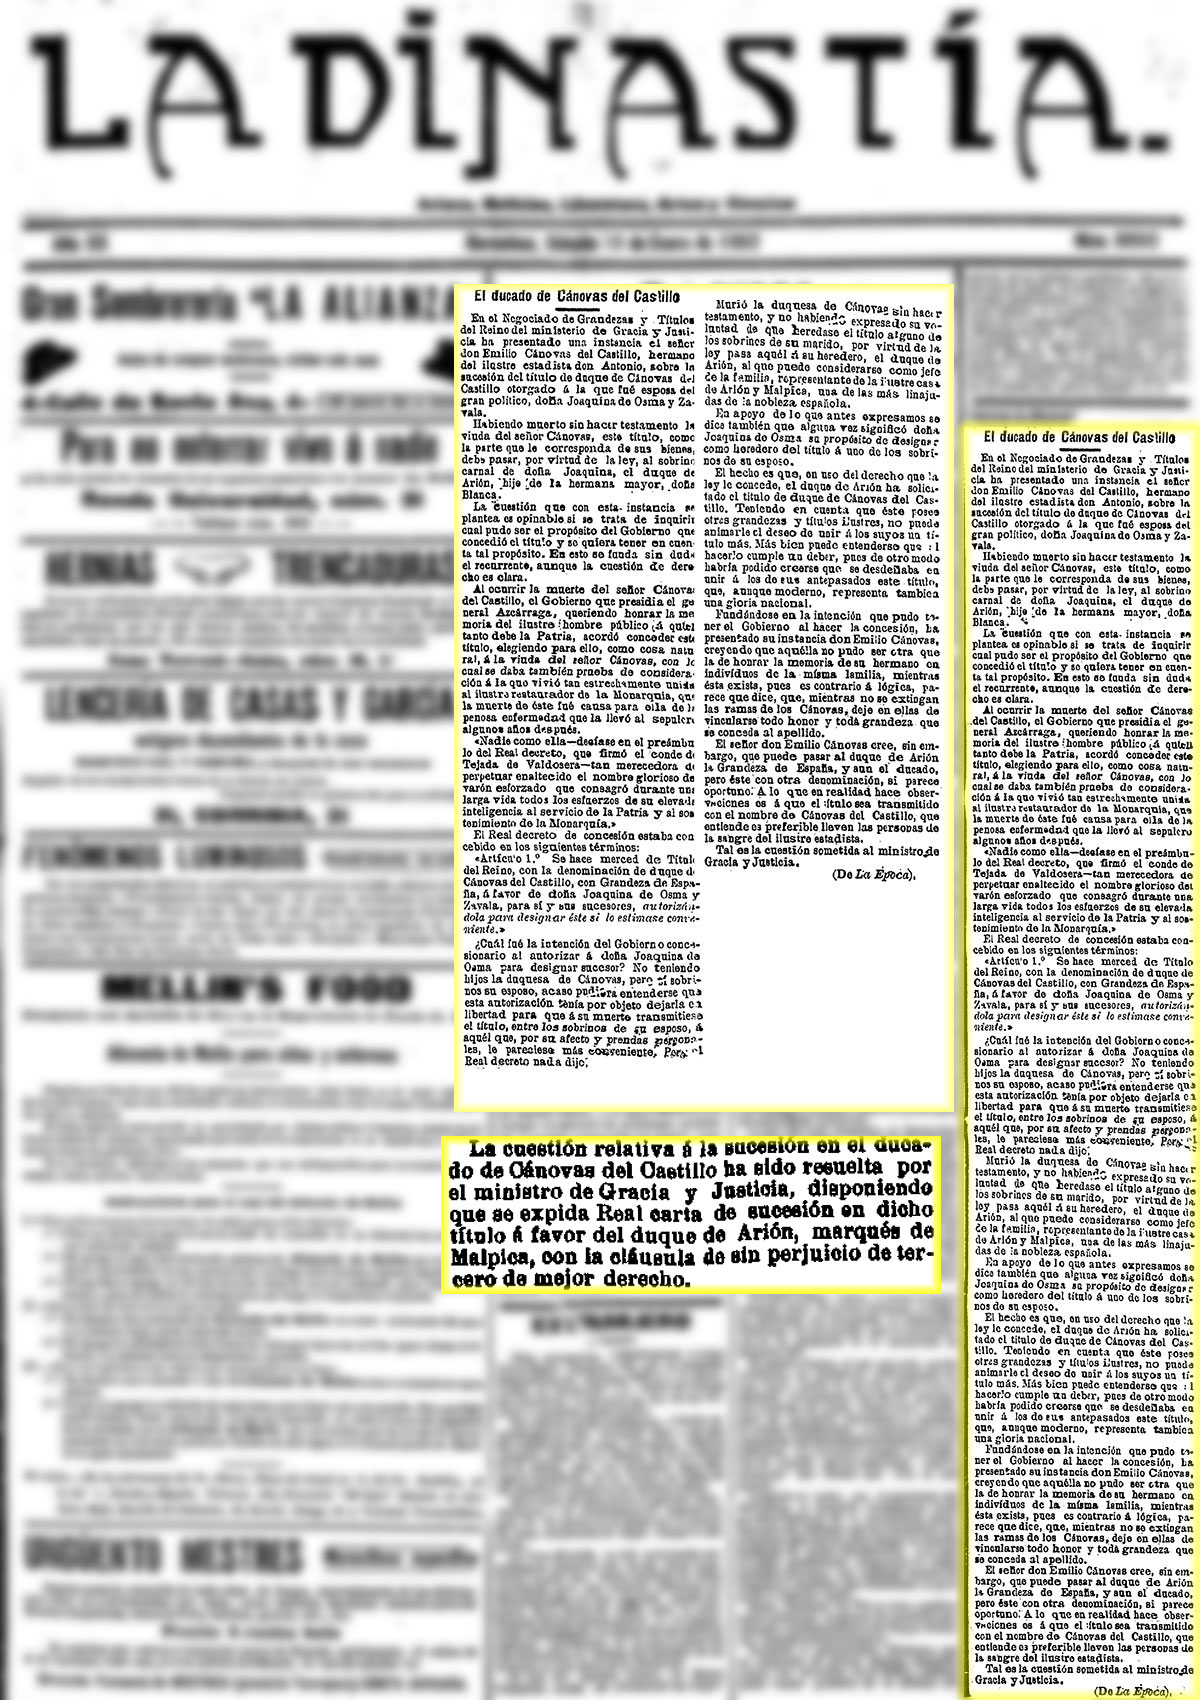 El Globo 29/1/1902, n.º 9.547. Sucesión en el título del ducado de Cánovas